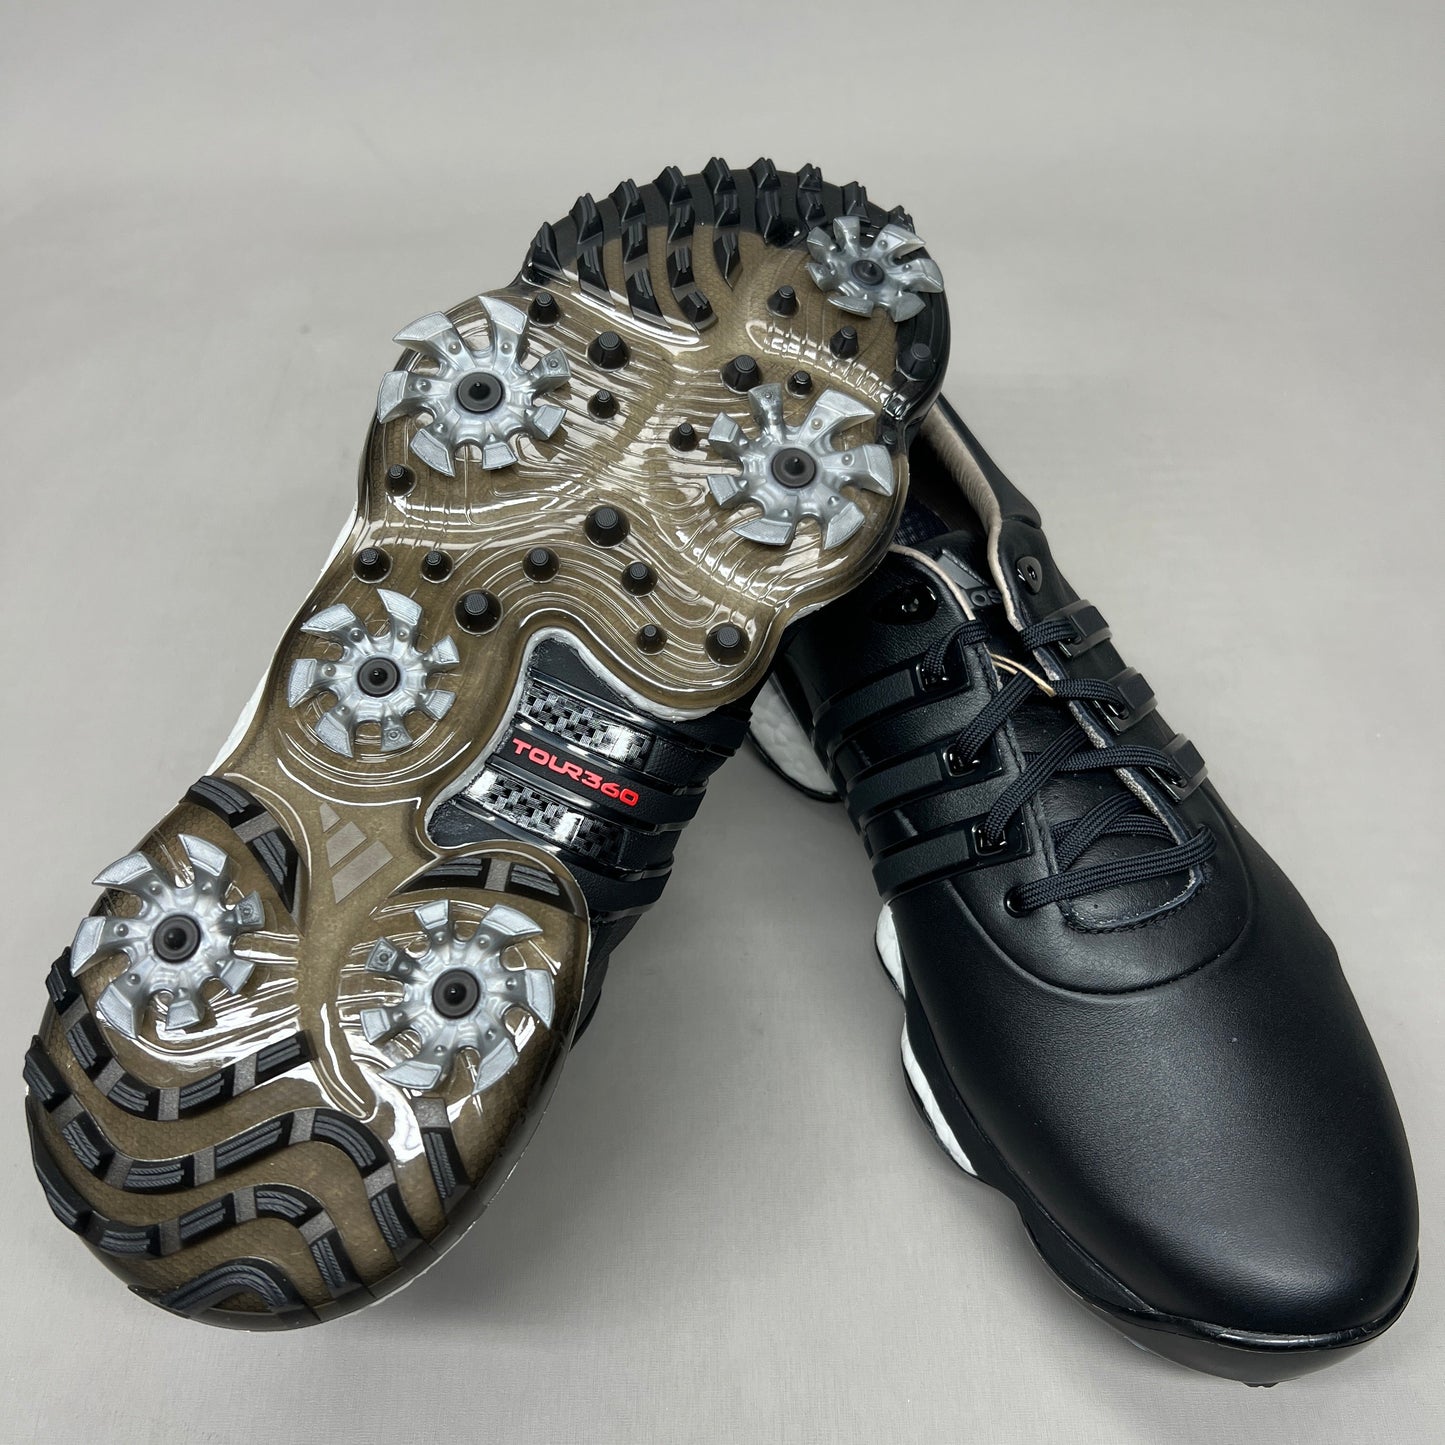 ADIDAS Golf Shoes TOUR360 22 Leather Men's Sz 8 Black / Iron Metallic GZ3158 (New)